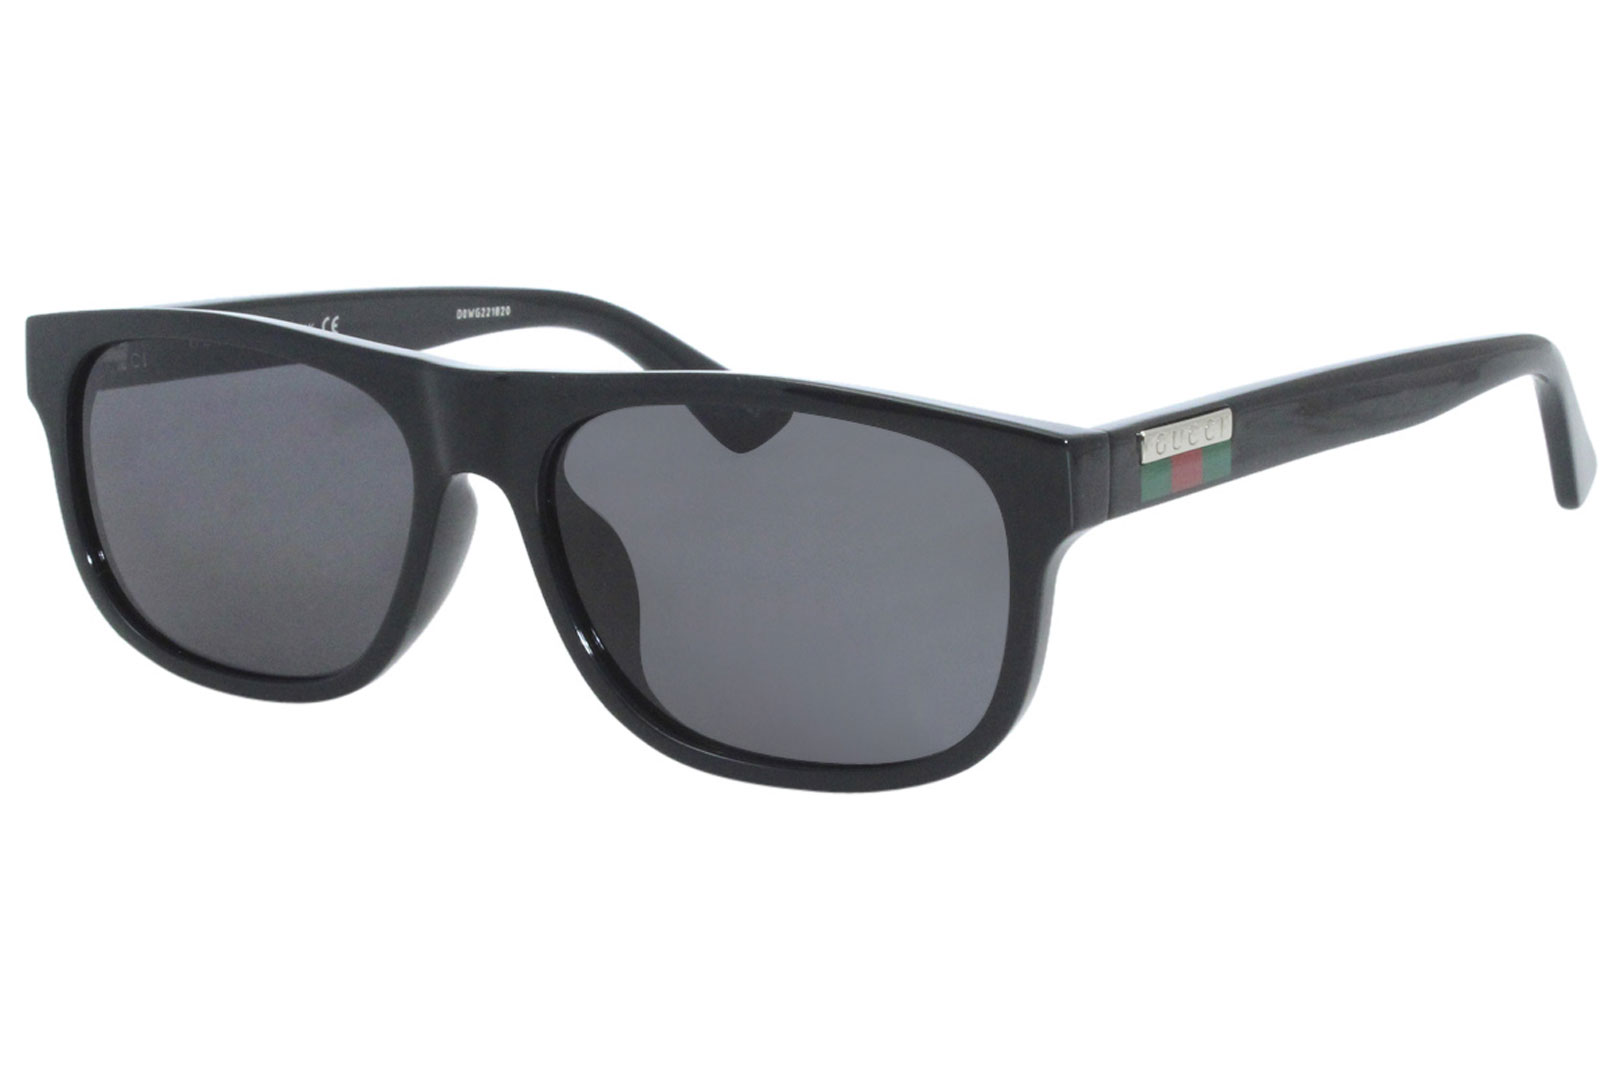 Gucci GG0770SA 001 Sunglasses Black 58mm